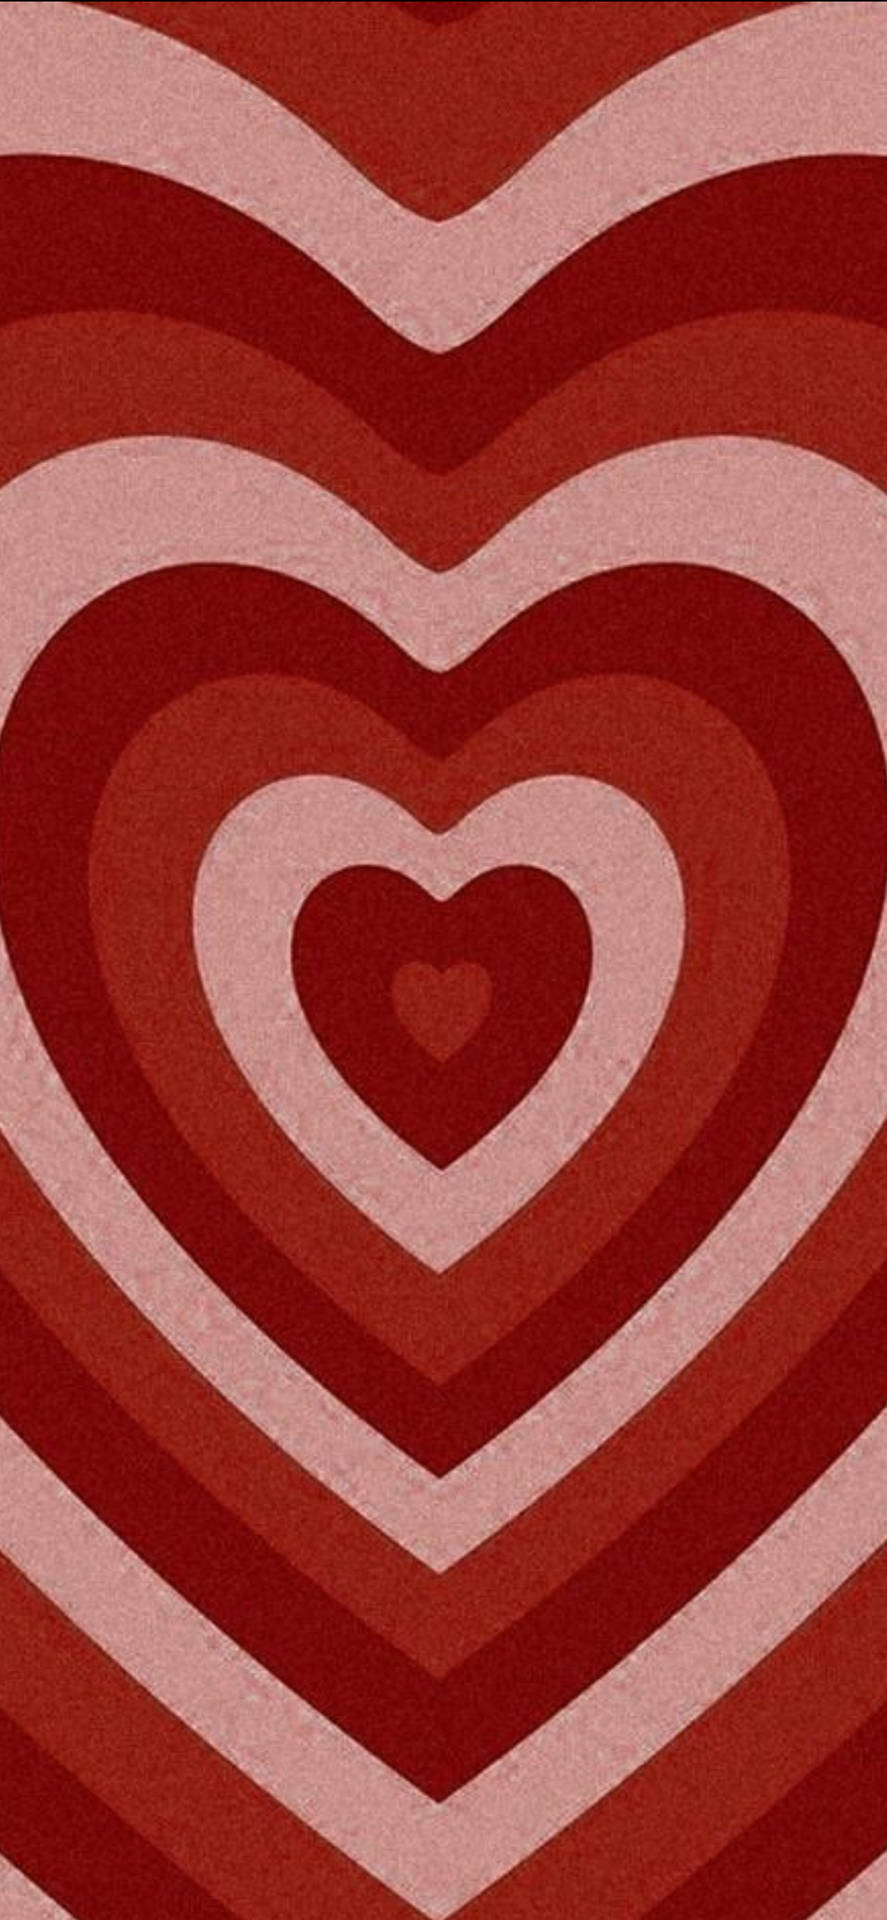 Zeigensie Liebe An Diesem Valentinstag Mit Herzen, Blumen Und Kreativität! Wallpaper